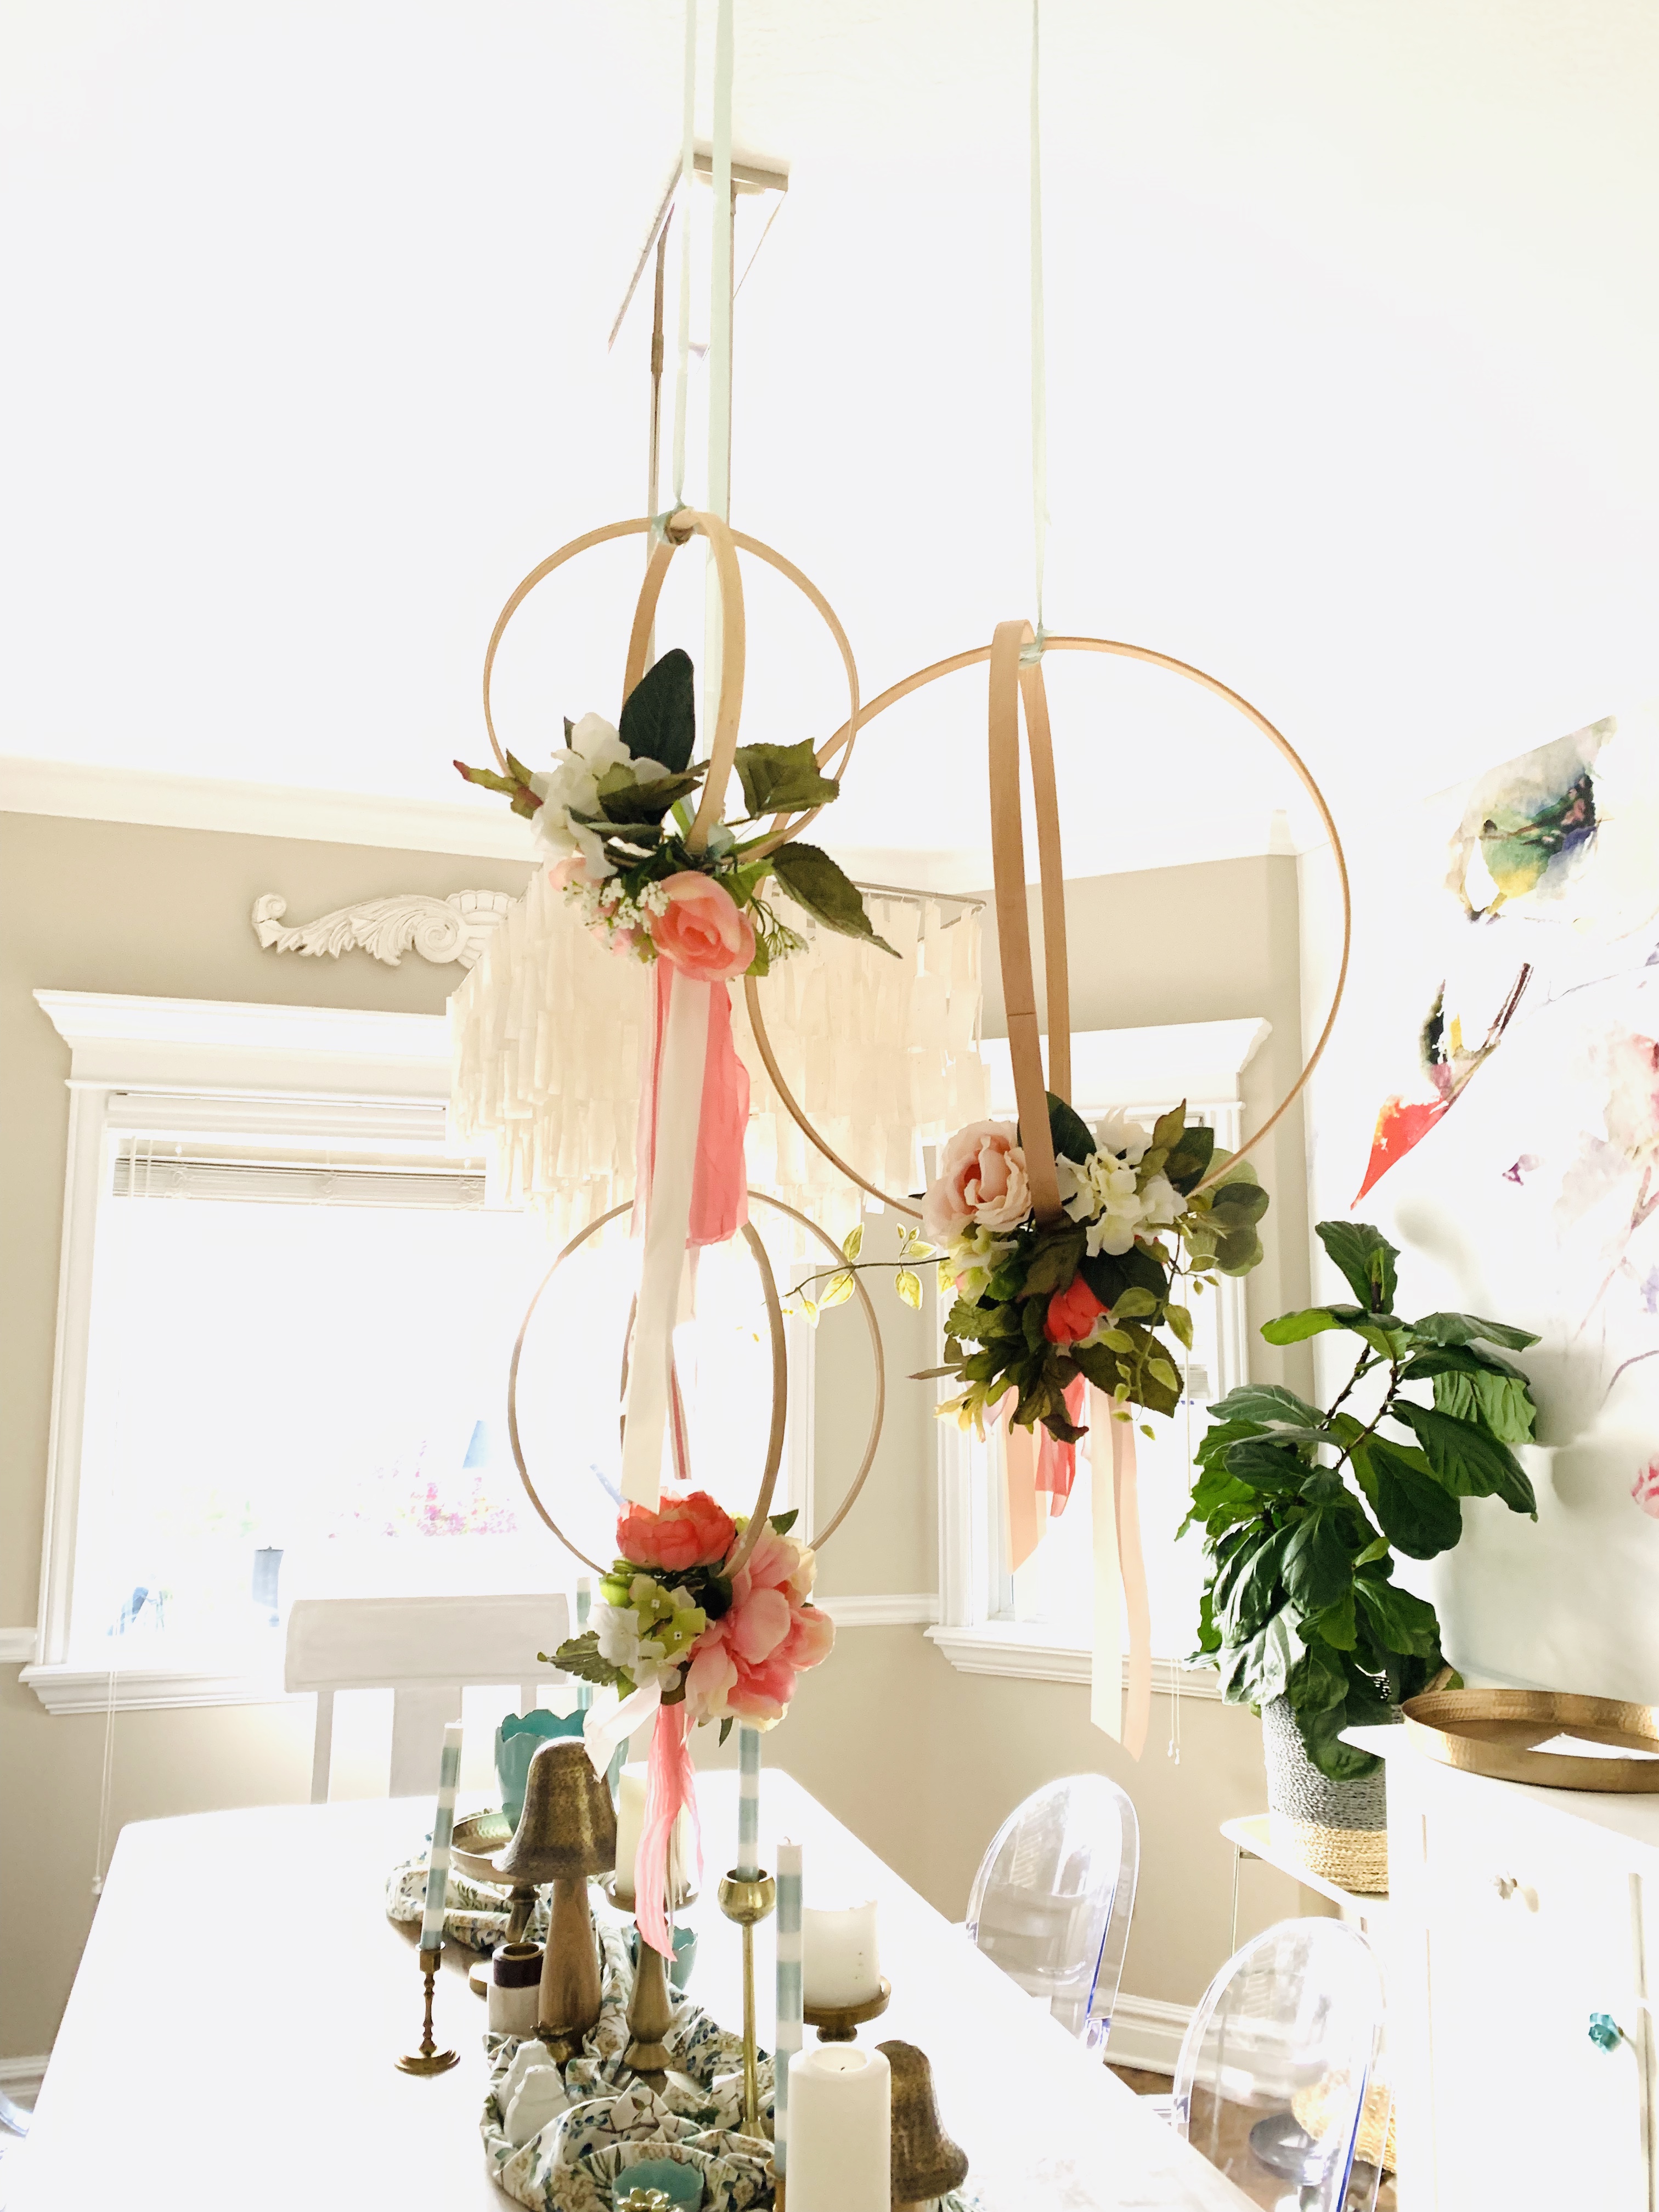 hoop wreath chandelier, wedding decor, DIY wedding decor, DIY party decor, DIY hoop wreath chandelier, how to make a hoop wreath chandelier, studio 5 crafts, crafts, easy crafts, flower chandelier, how to make a flower chandelier, outdoor wedding decor,